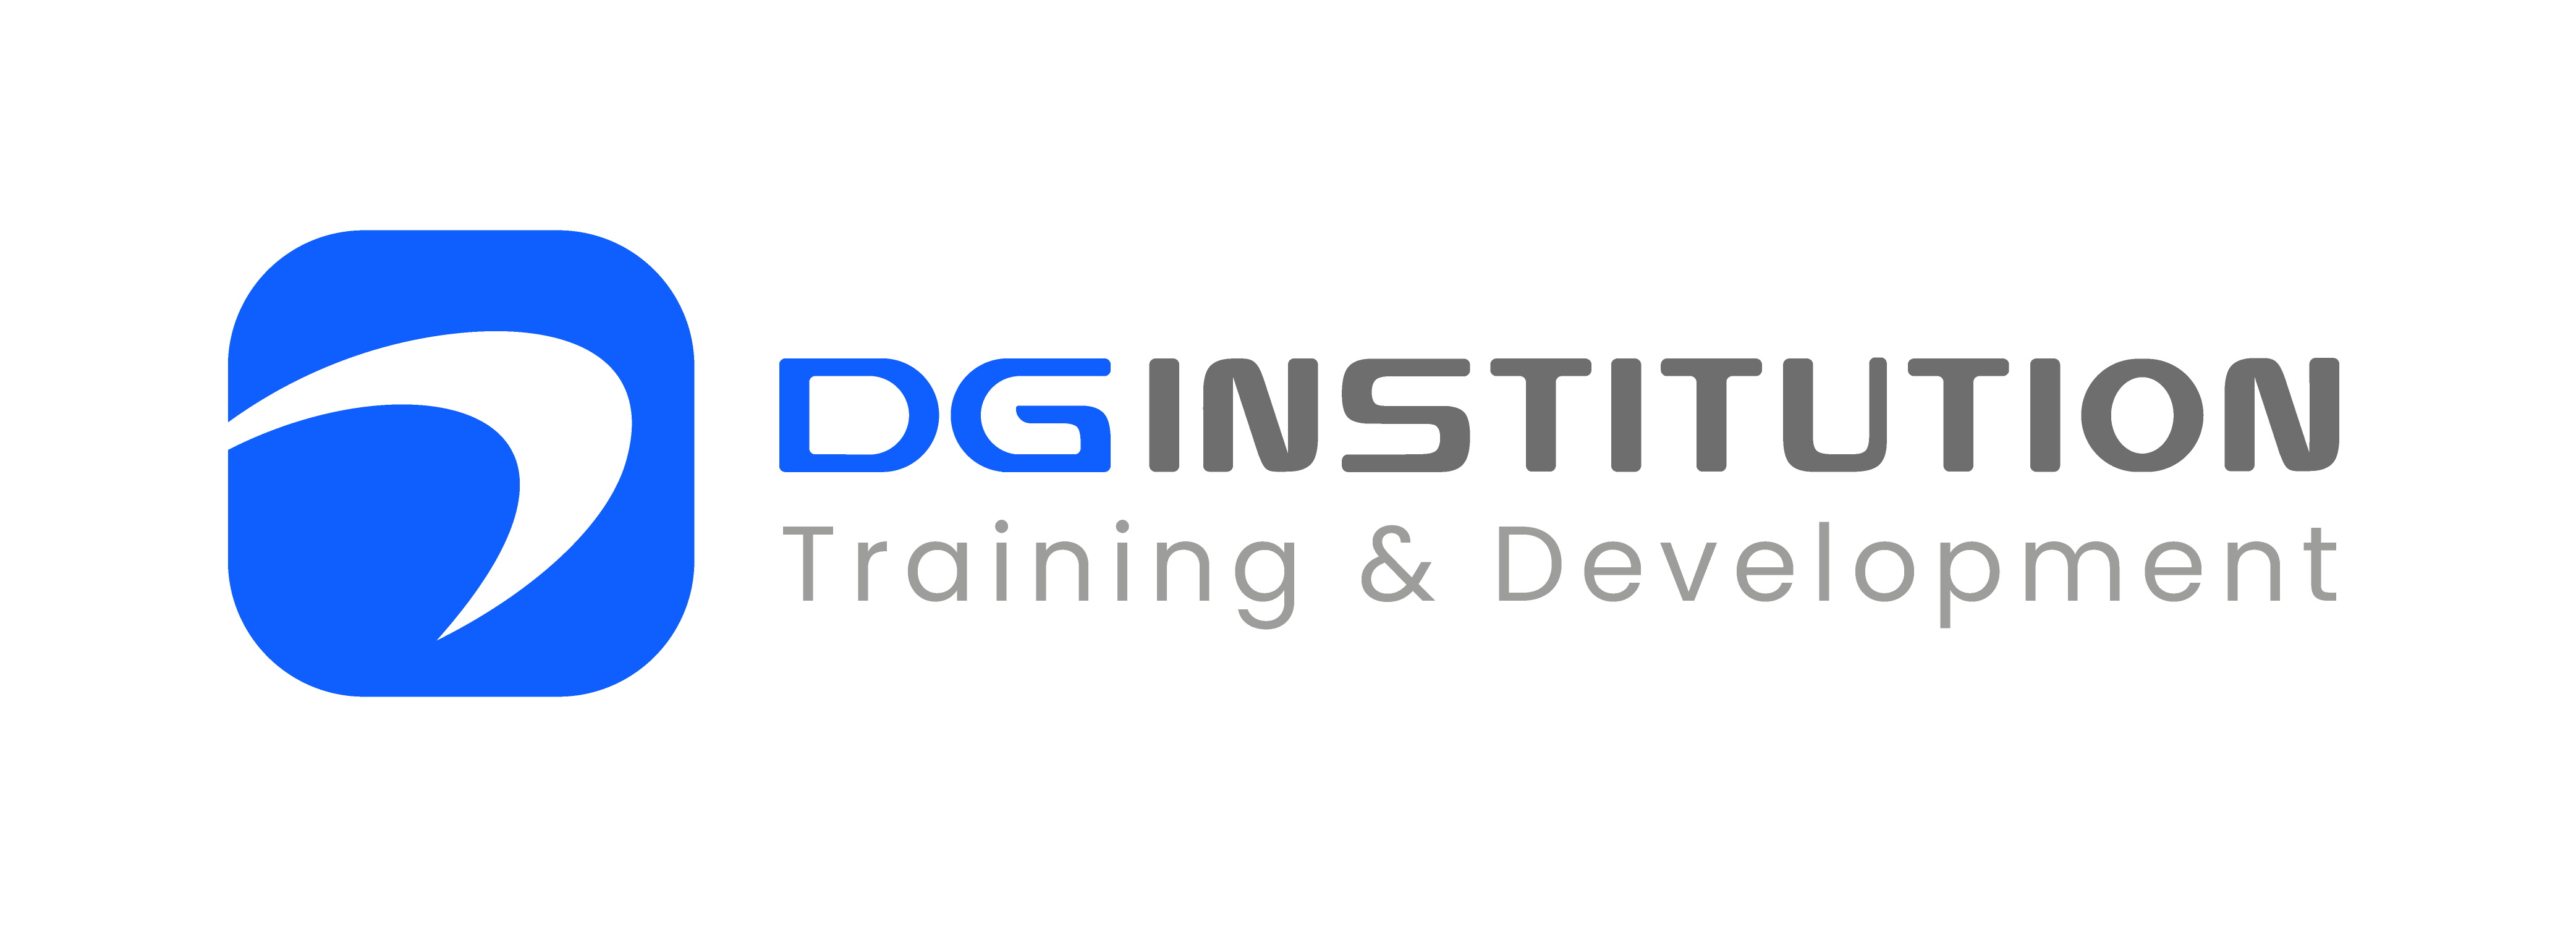 DG Training and Development Institute Logo